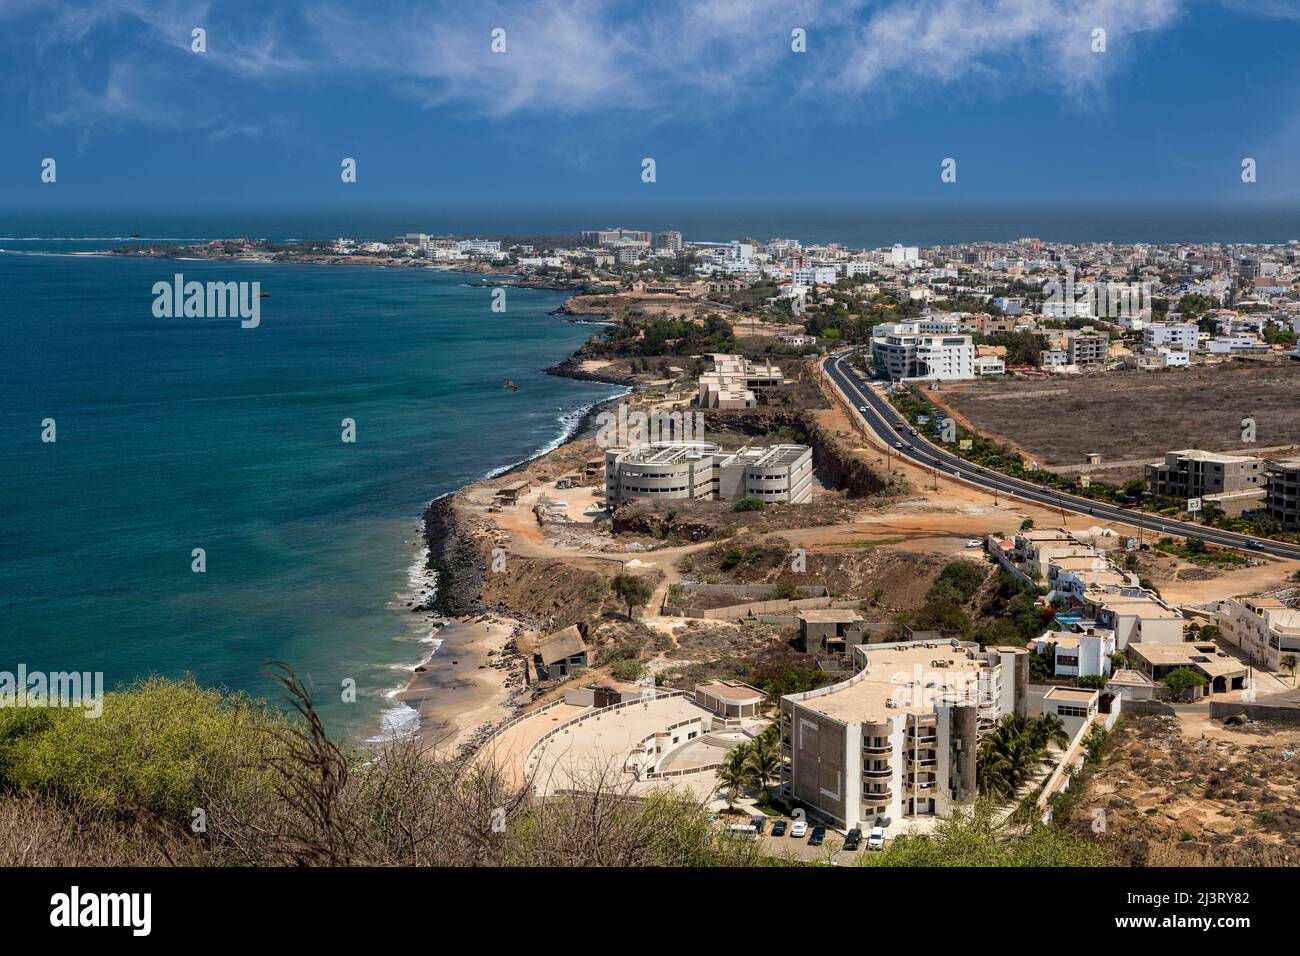 Dakar, Sénégal. Les Almadies, une banlieue de Dakar. Le point le plus à l'ouest du continent africain se trouve à l'extrême gauche. Banque D'Images